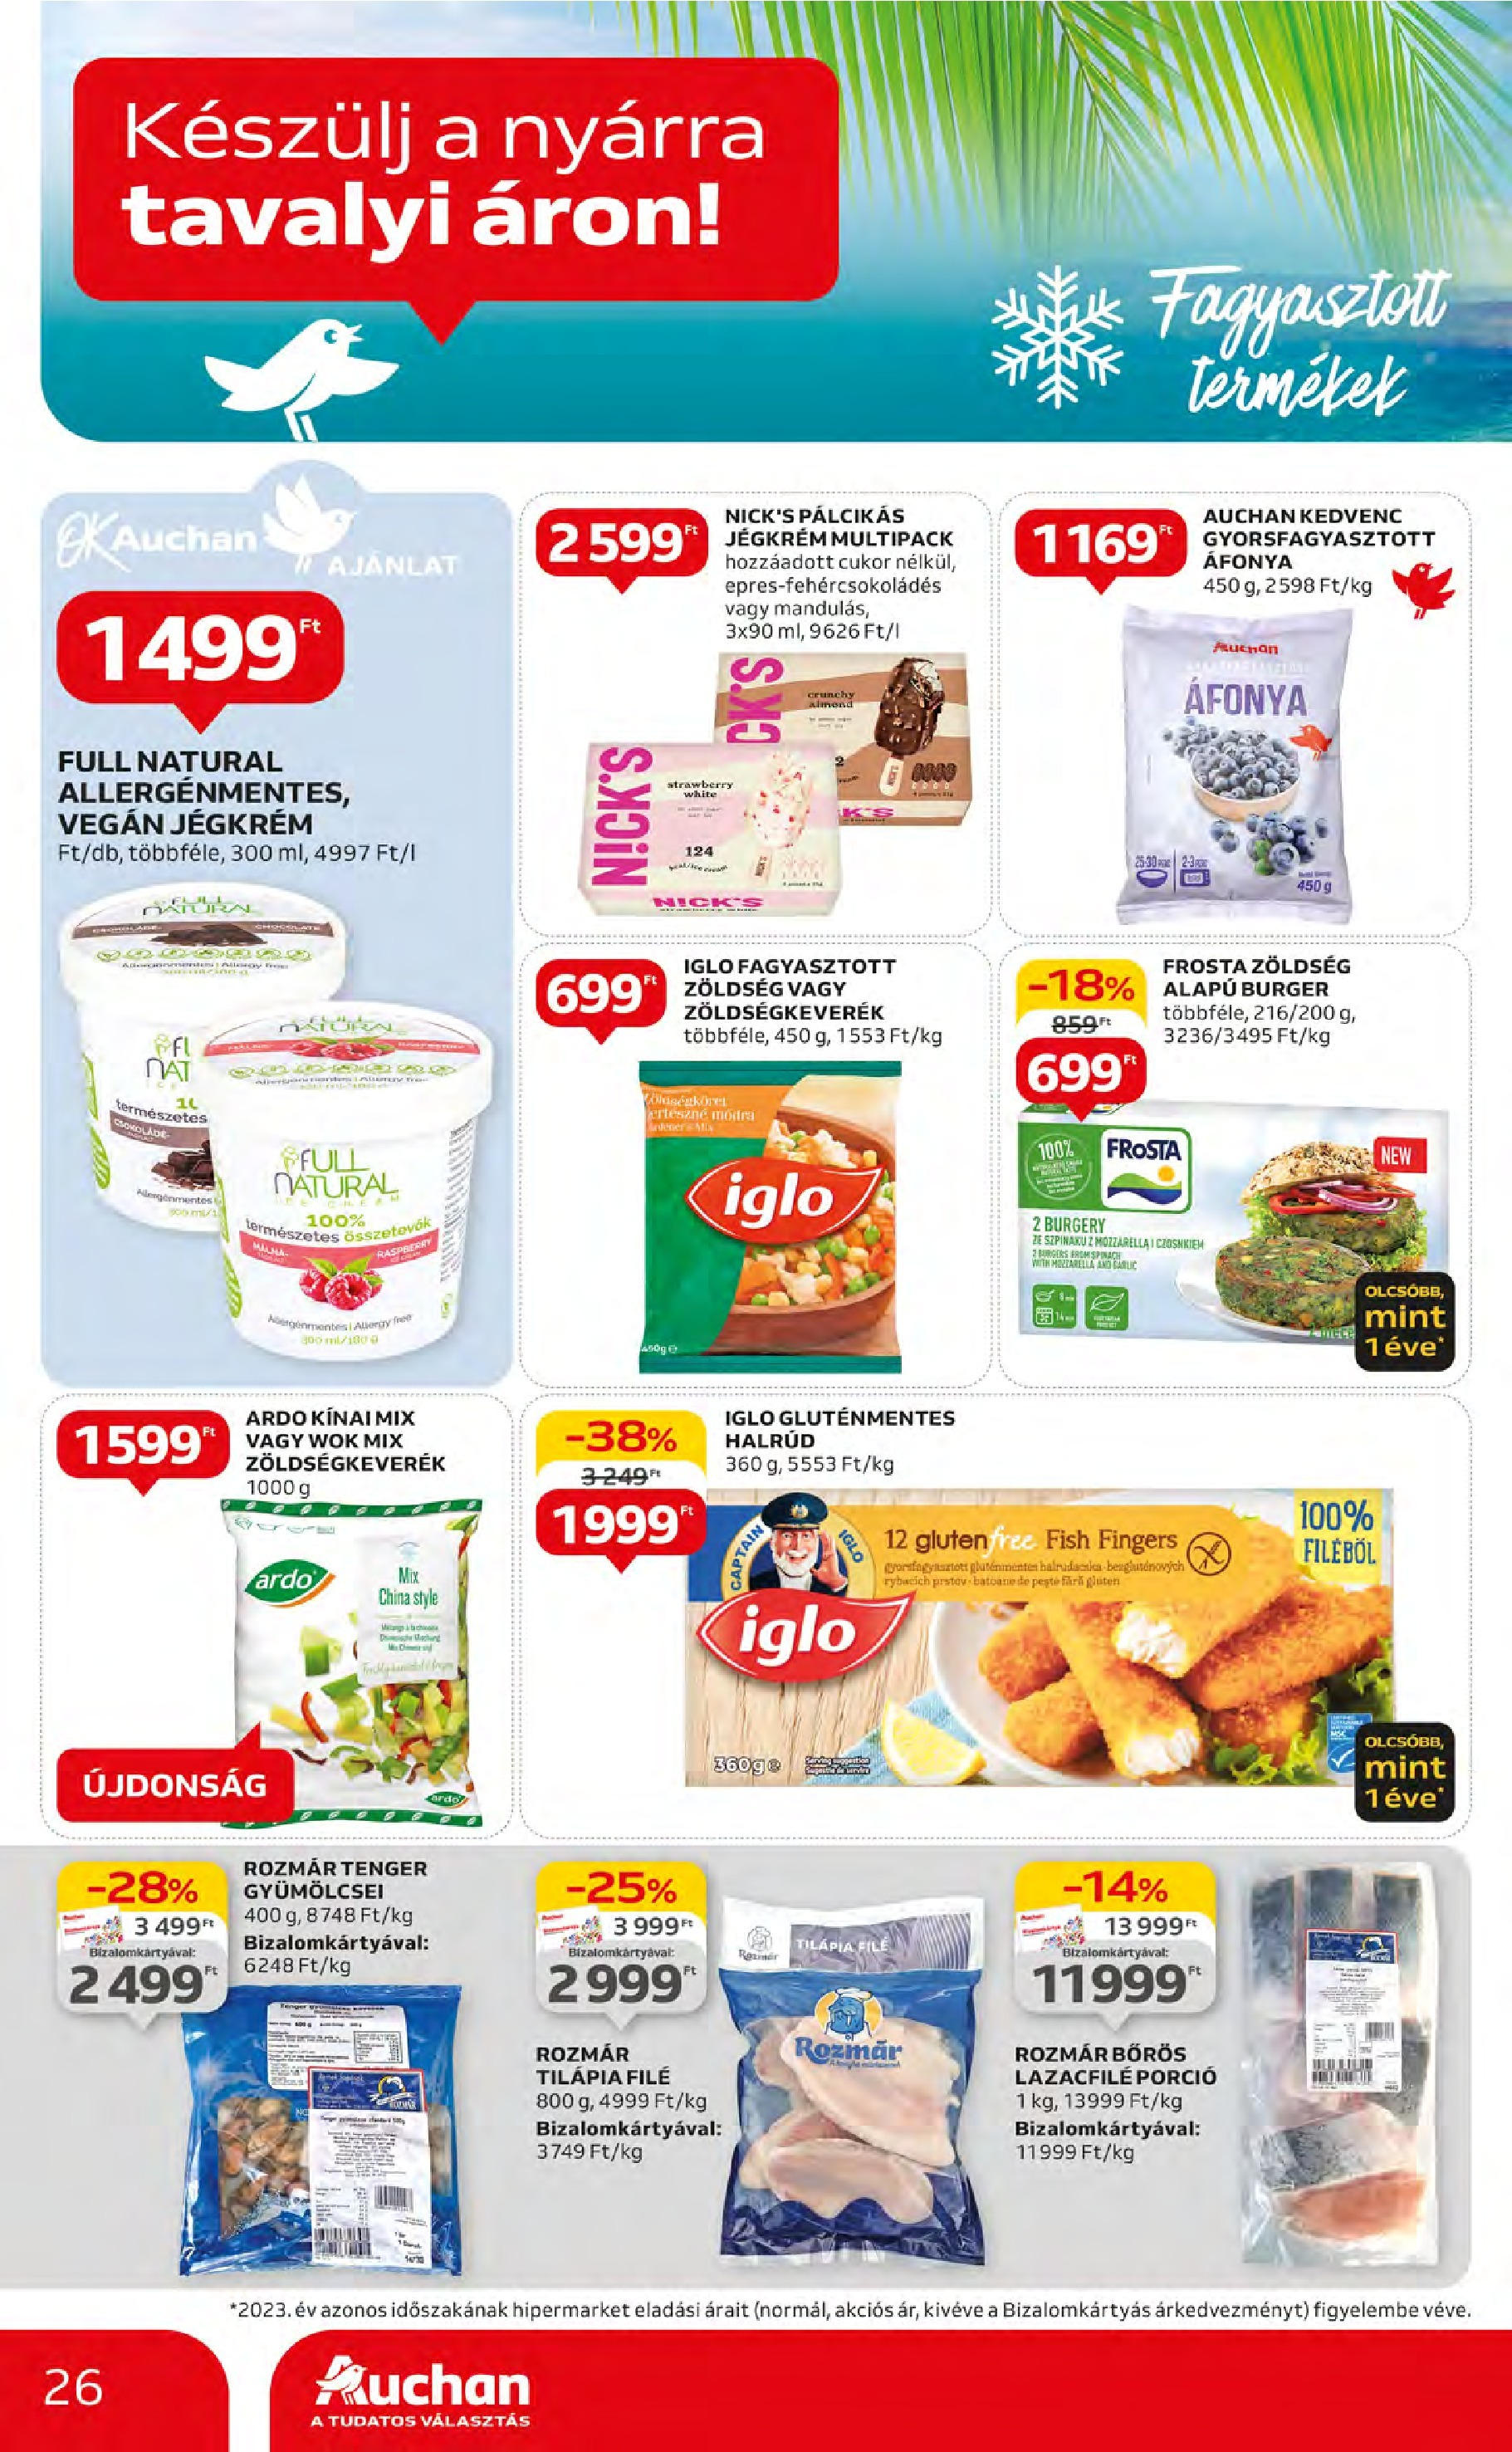 Auchan  Akciós újság - 2024.05.09. -tól/töl > akció, szórólap 🛍️ | Oldal: 26 | Termékek: Mozzarella, Tilapia, Zöldség, Jégkrém